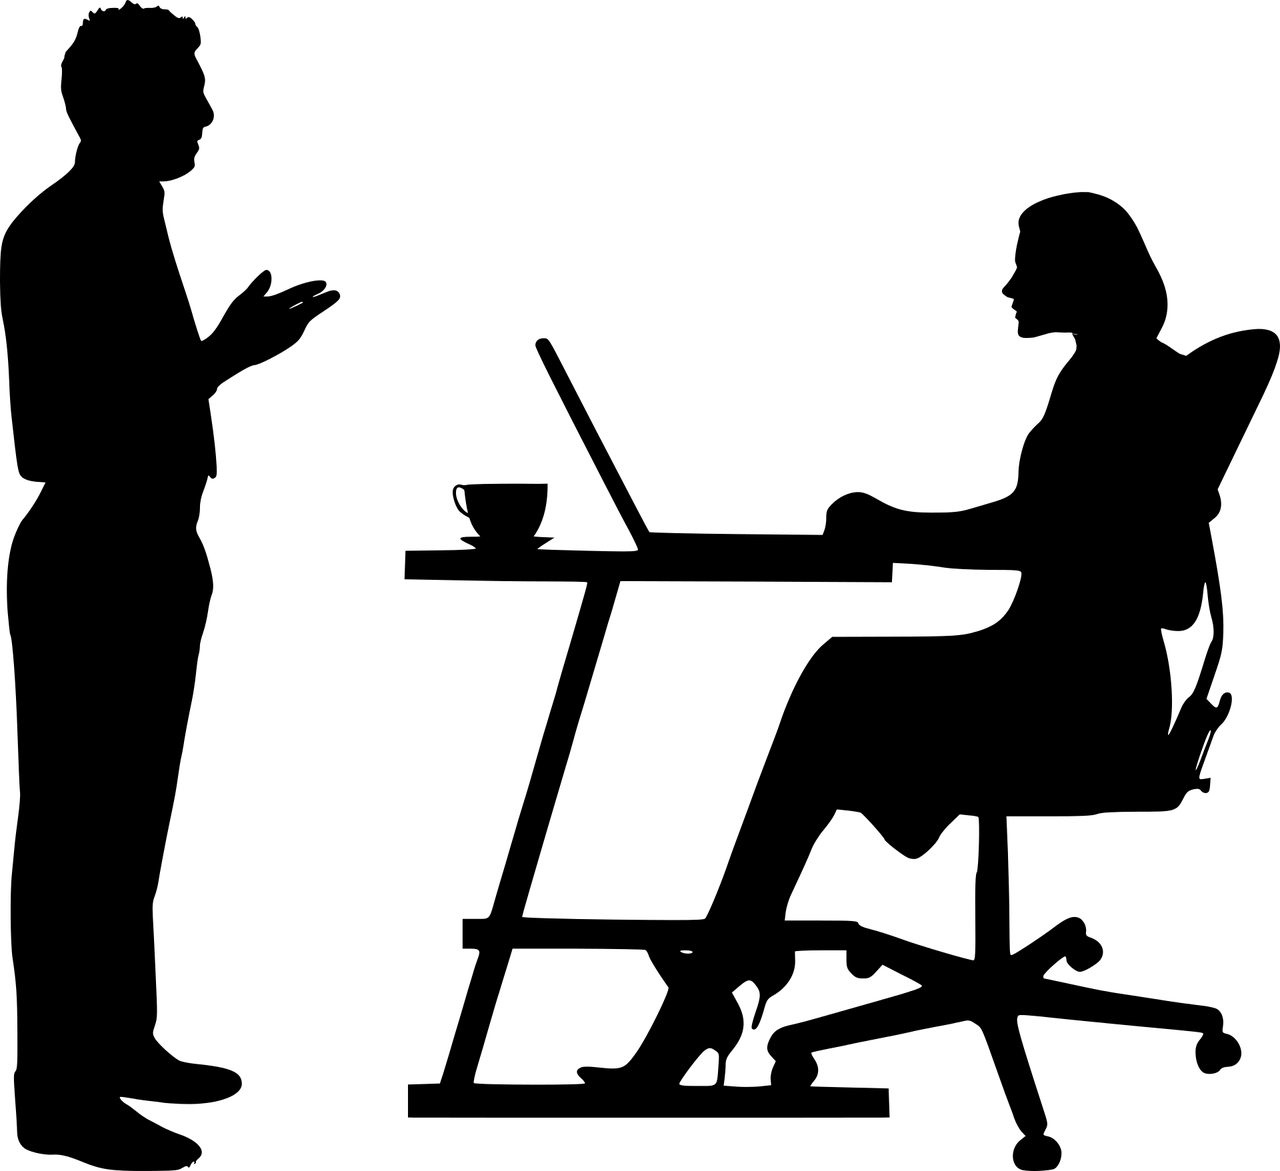 grafika wektorowa kobiety pracującej przy biurku na laptopie oraz mężczyzny stojącego na przeciw kobiety pracującej